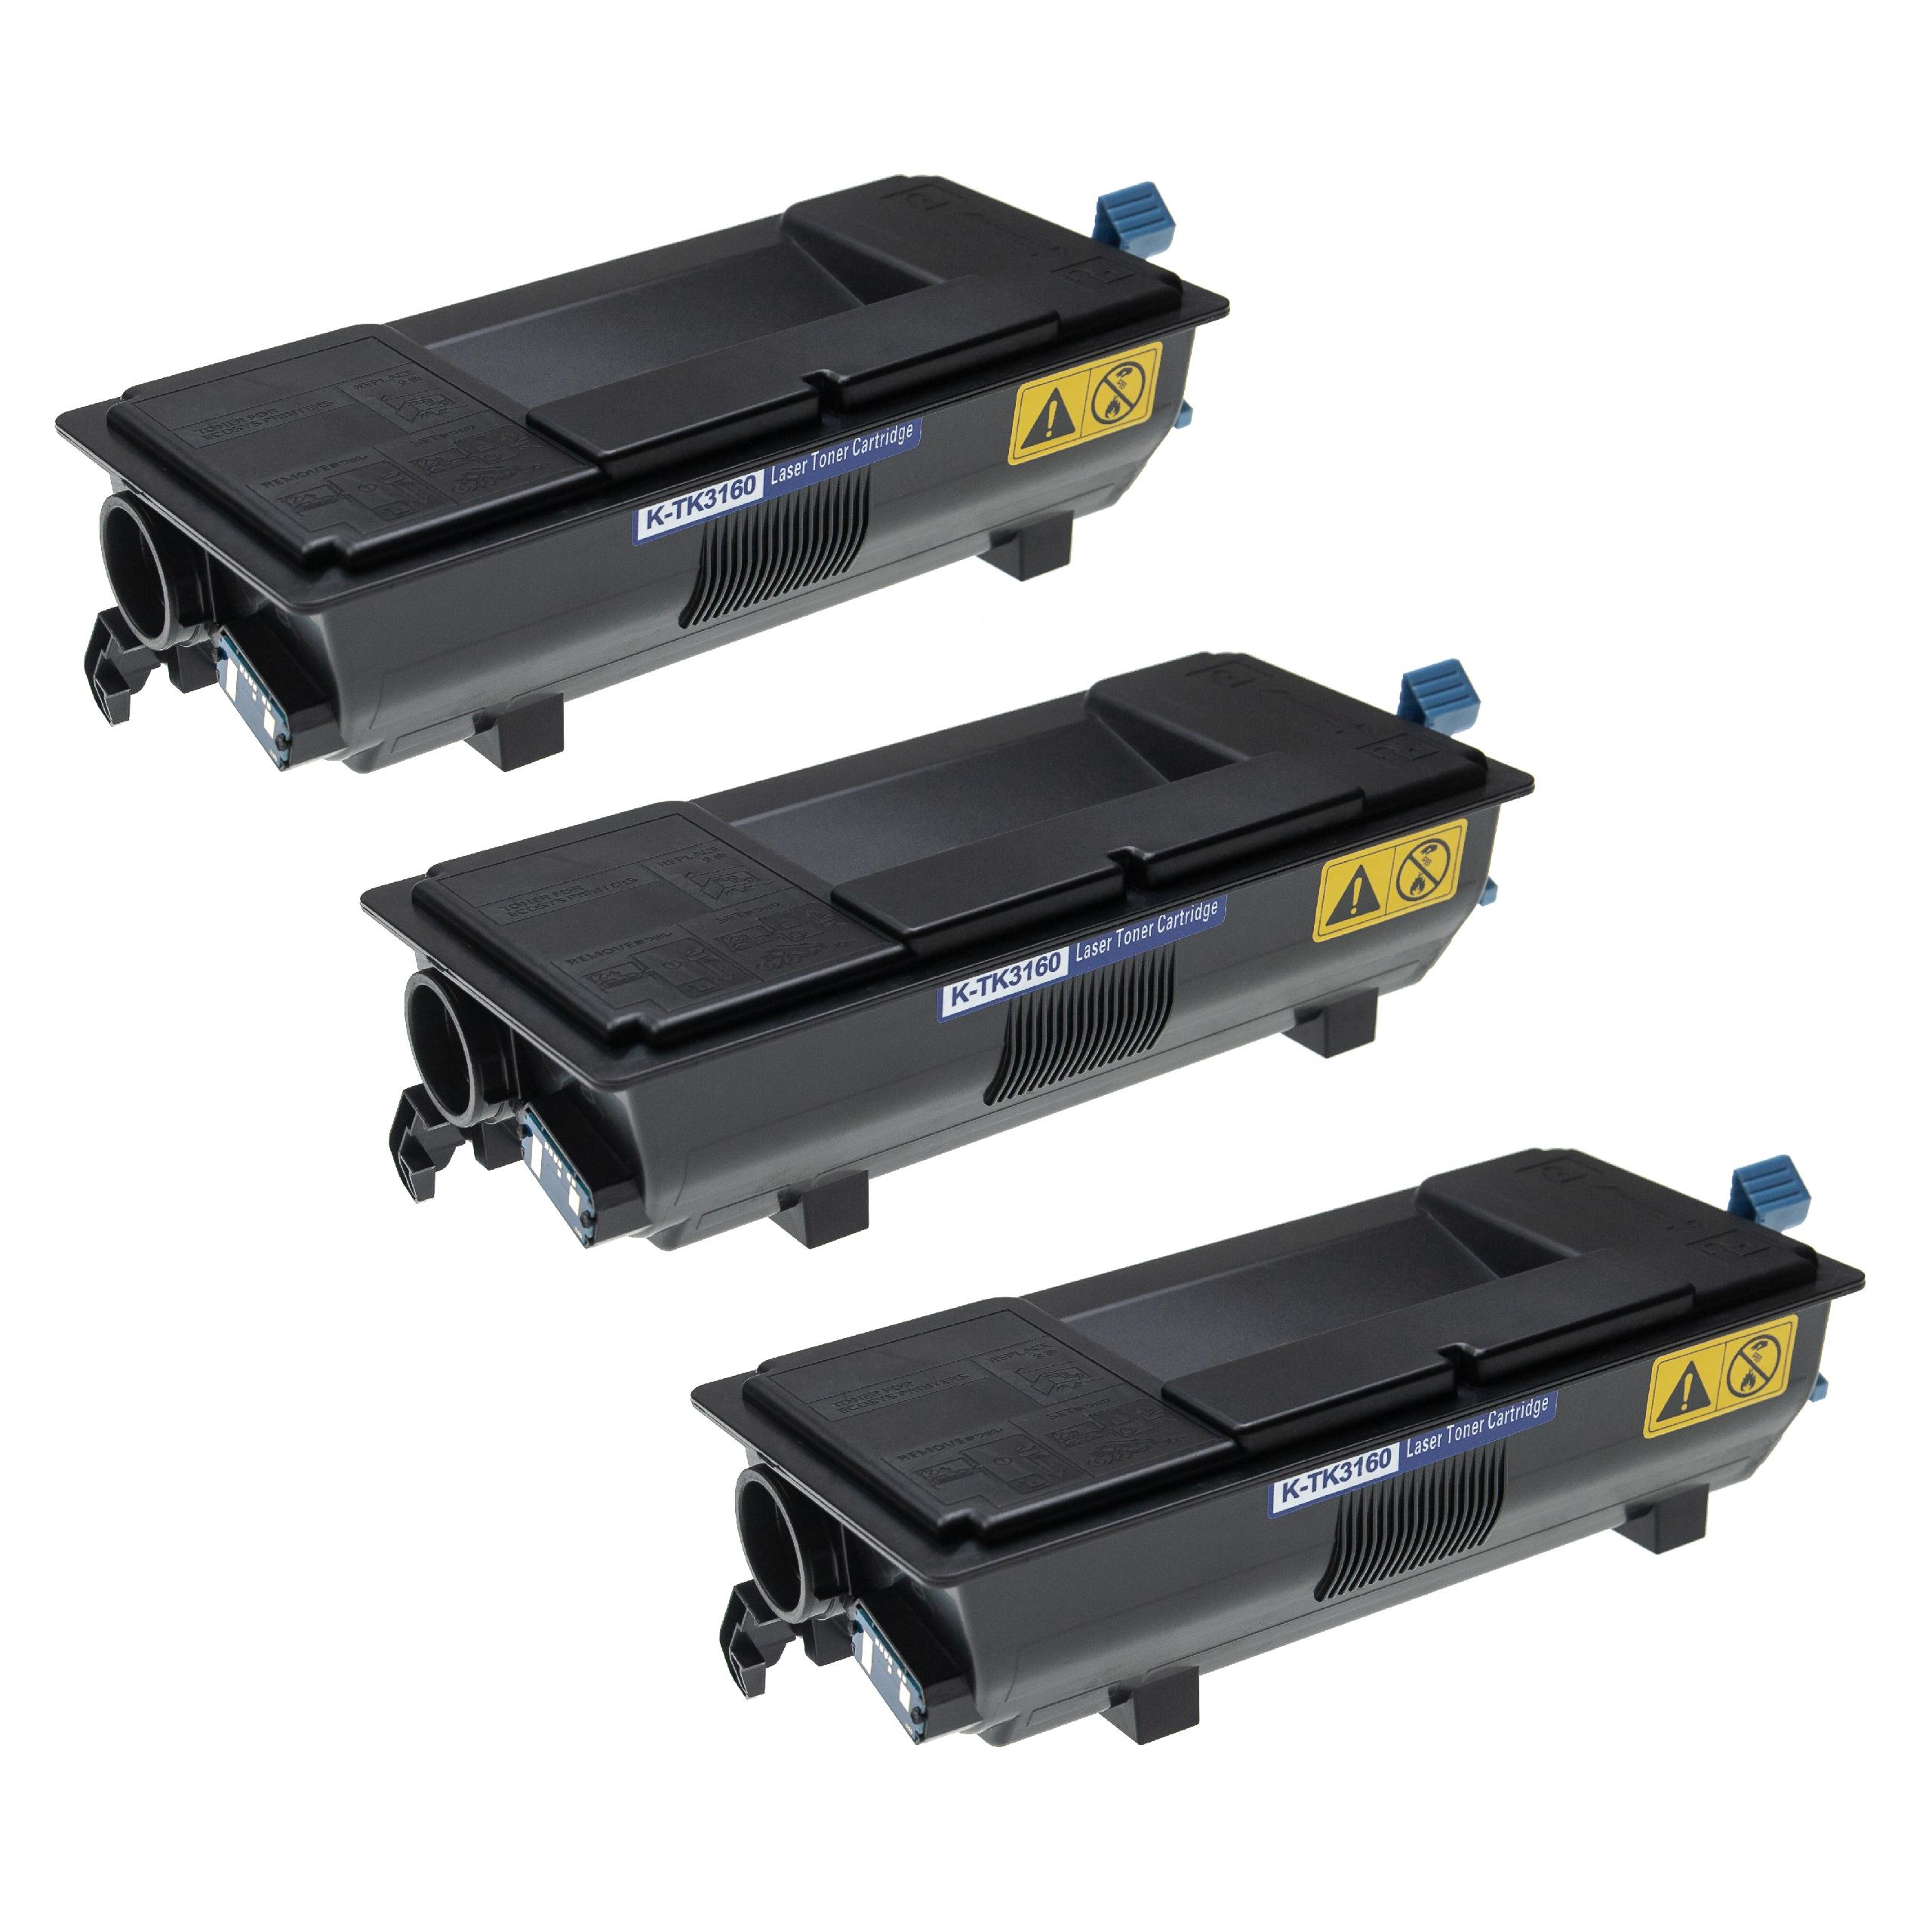 3x Toner als Ersatz für Kyocera TK-3160 für Kyocera Drucker + Resttonerbehälter, Schwarz